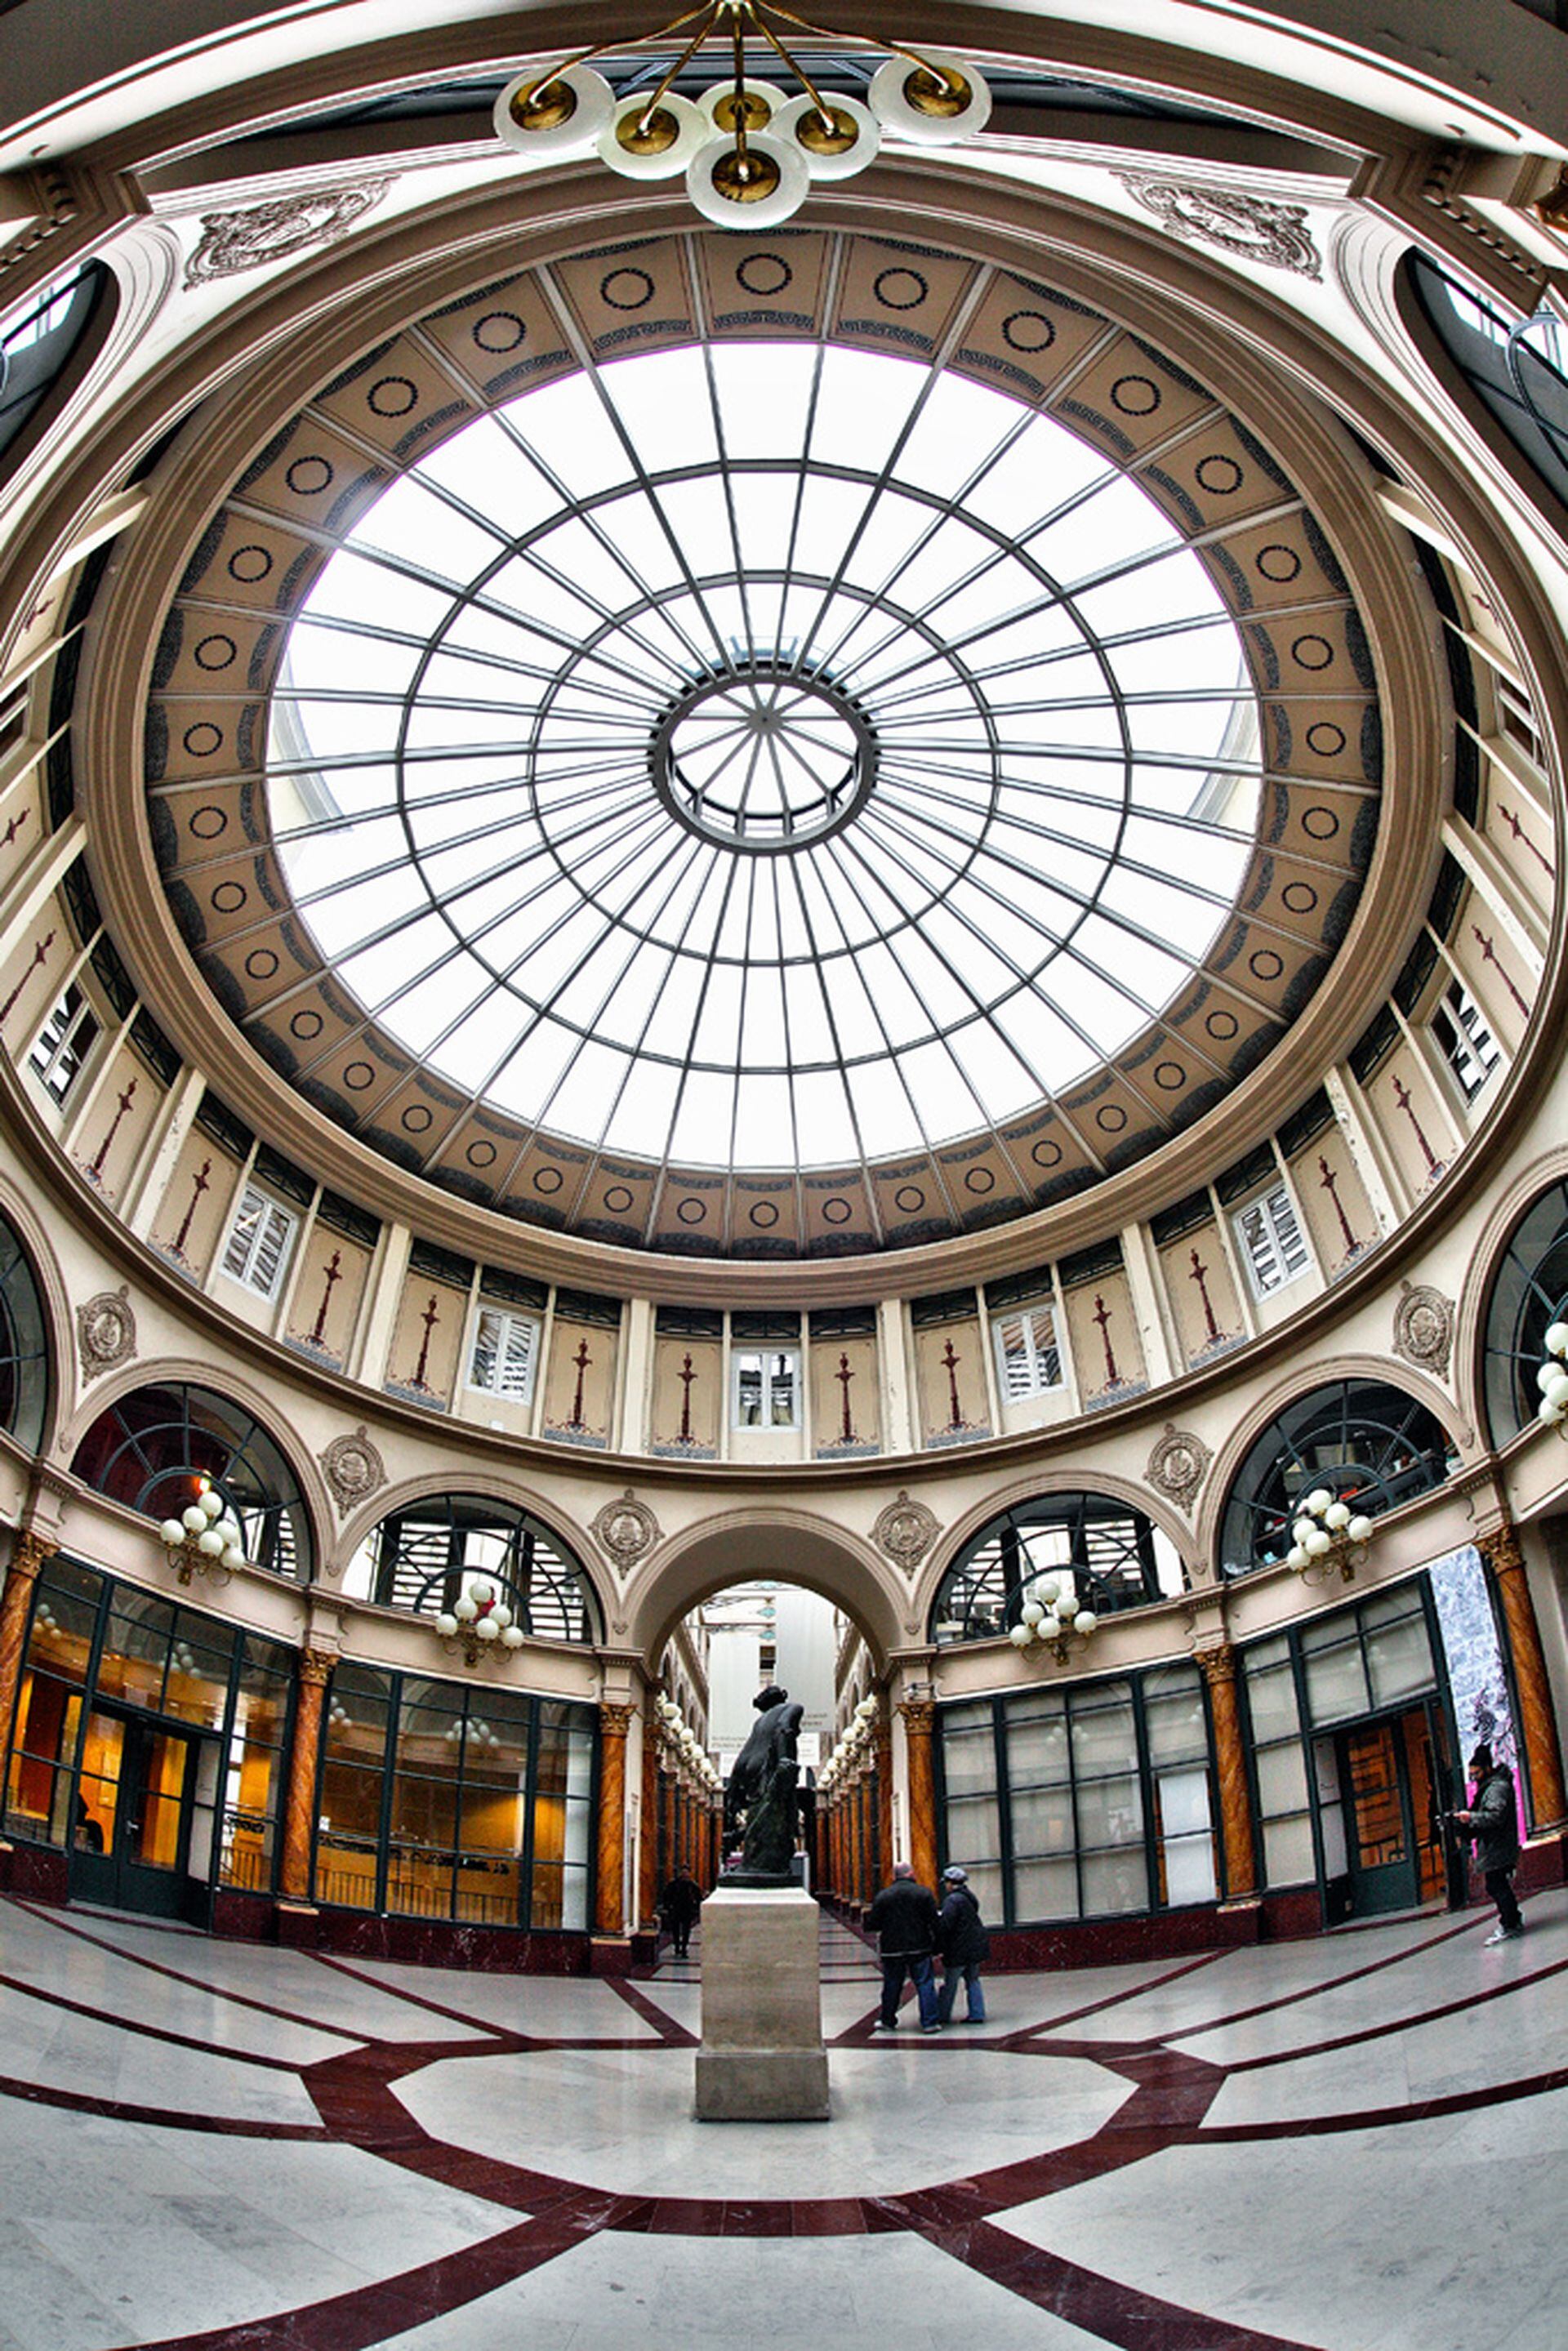 La gran cúpula vidriada de la Galerie Colbert.